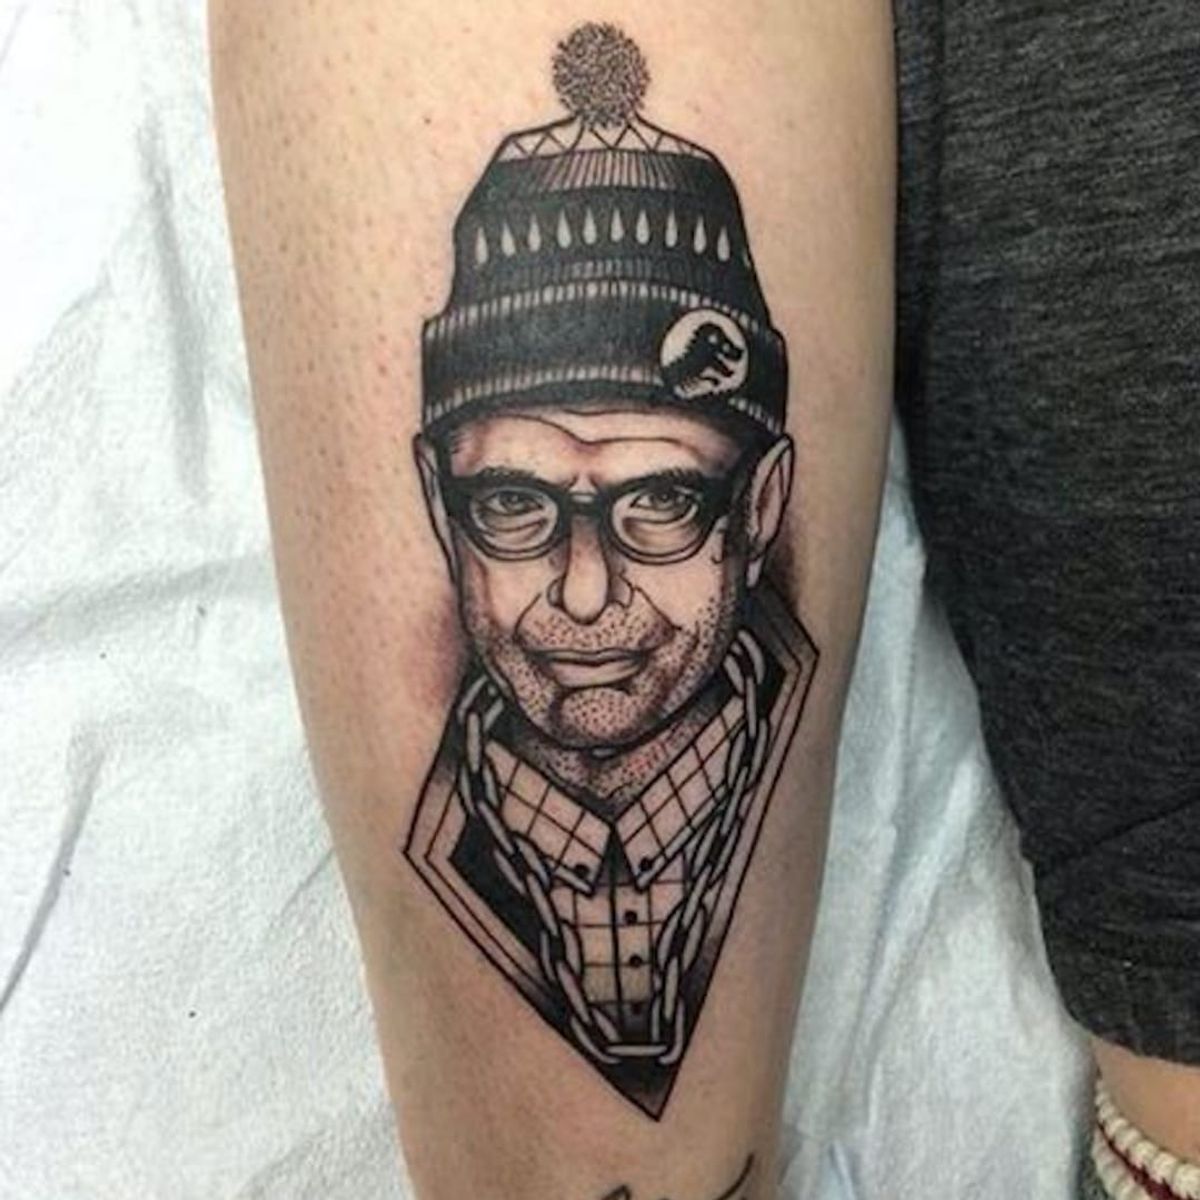 Tattoo uploaded by Ross Howerton • The most baller Jeff Goldblum tattoo ...